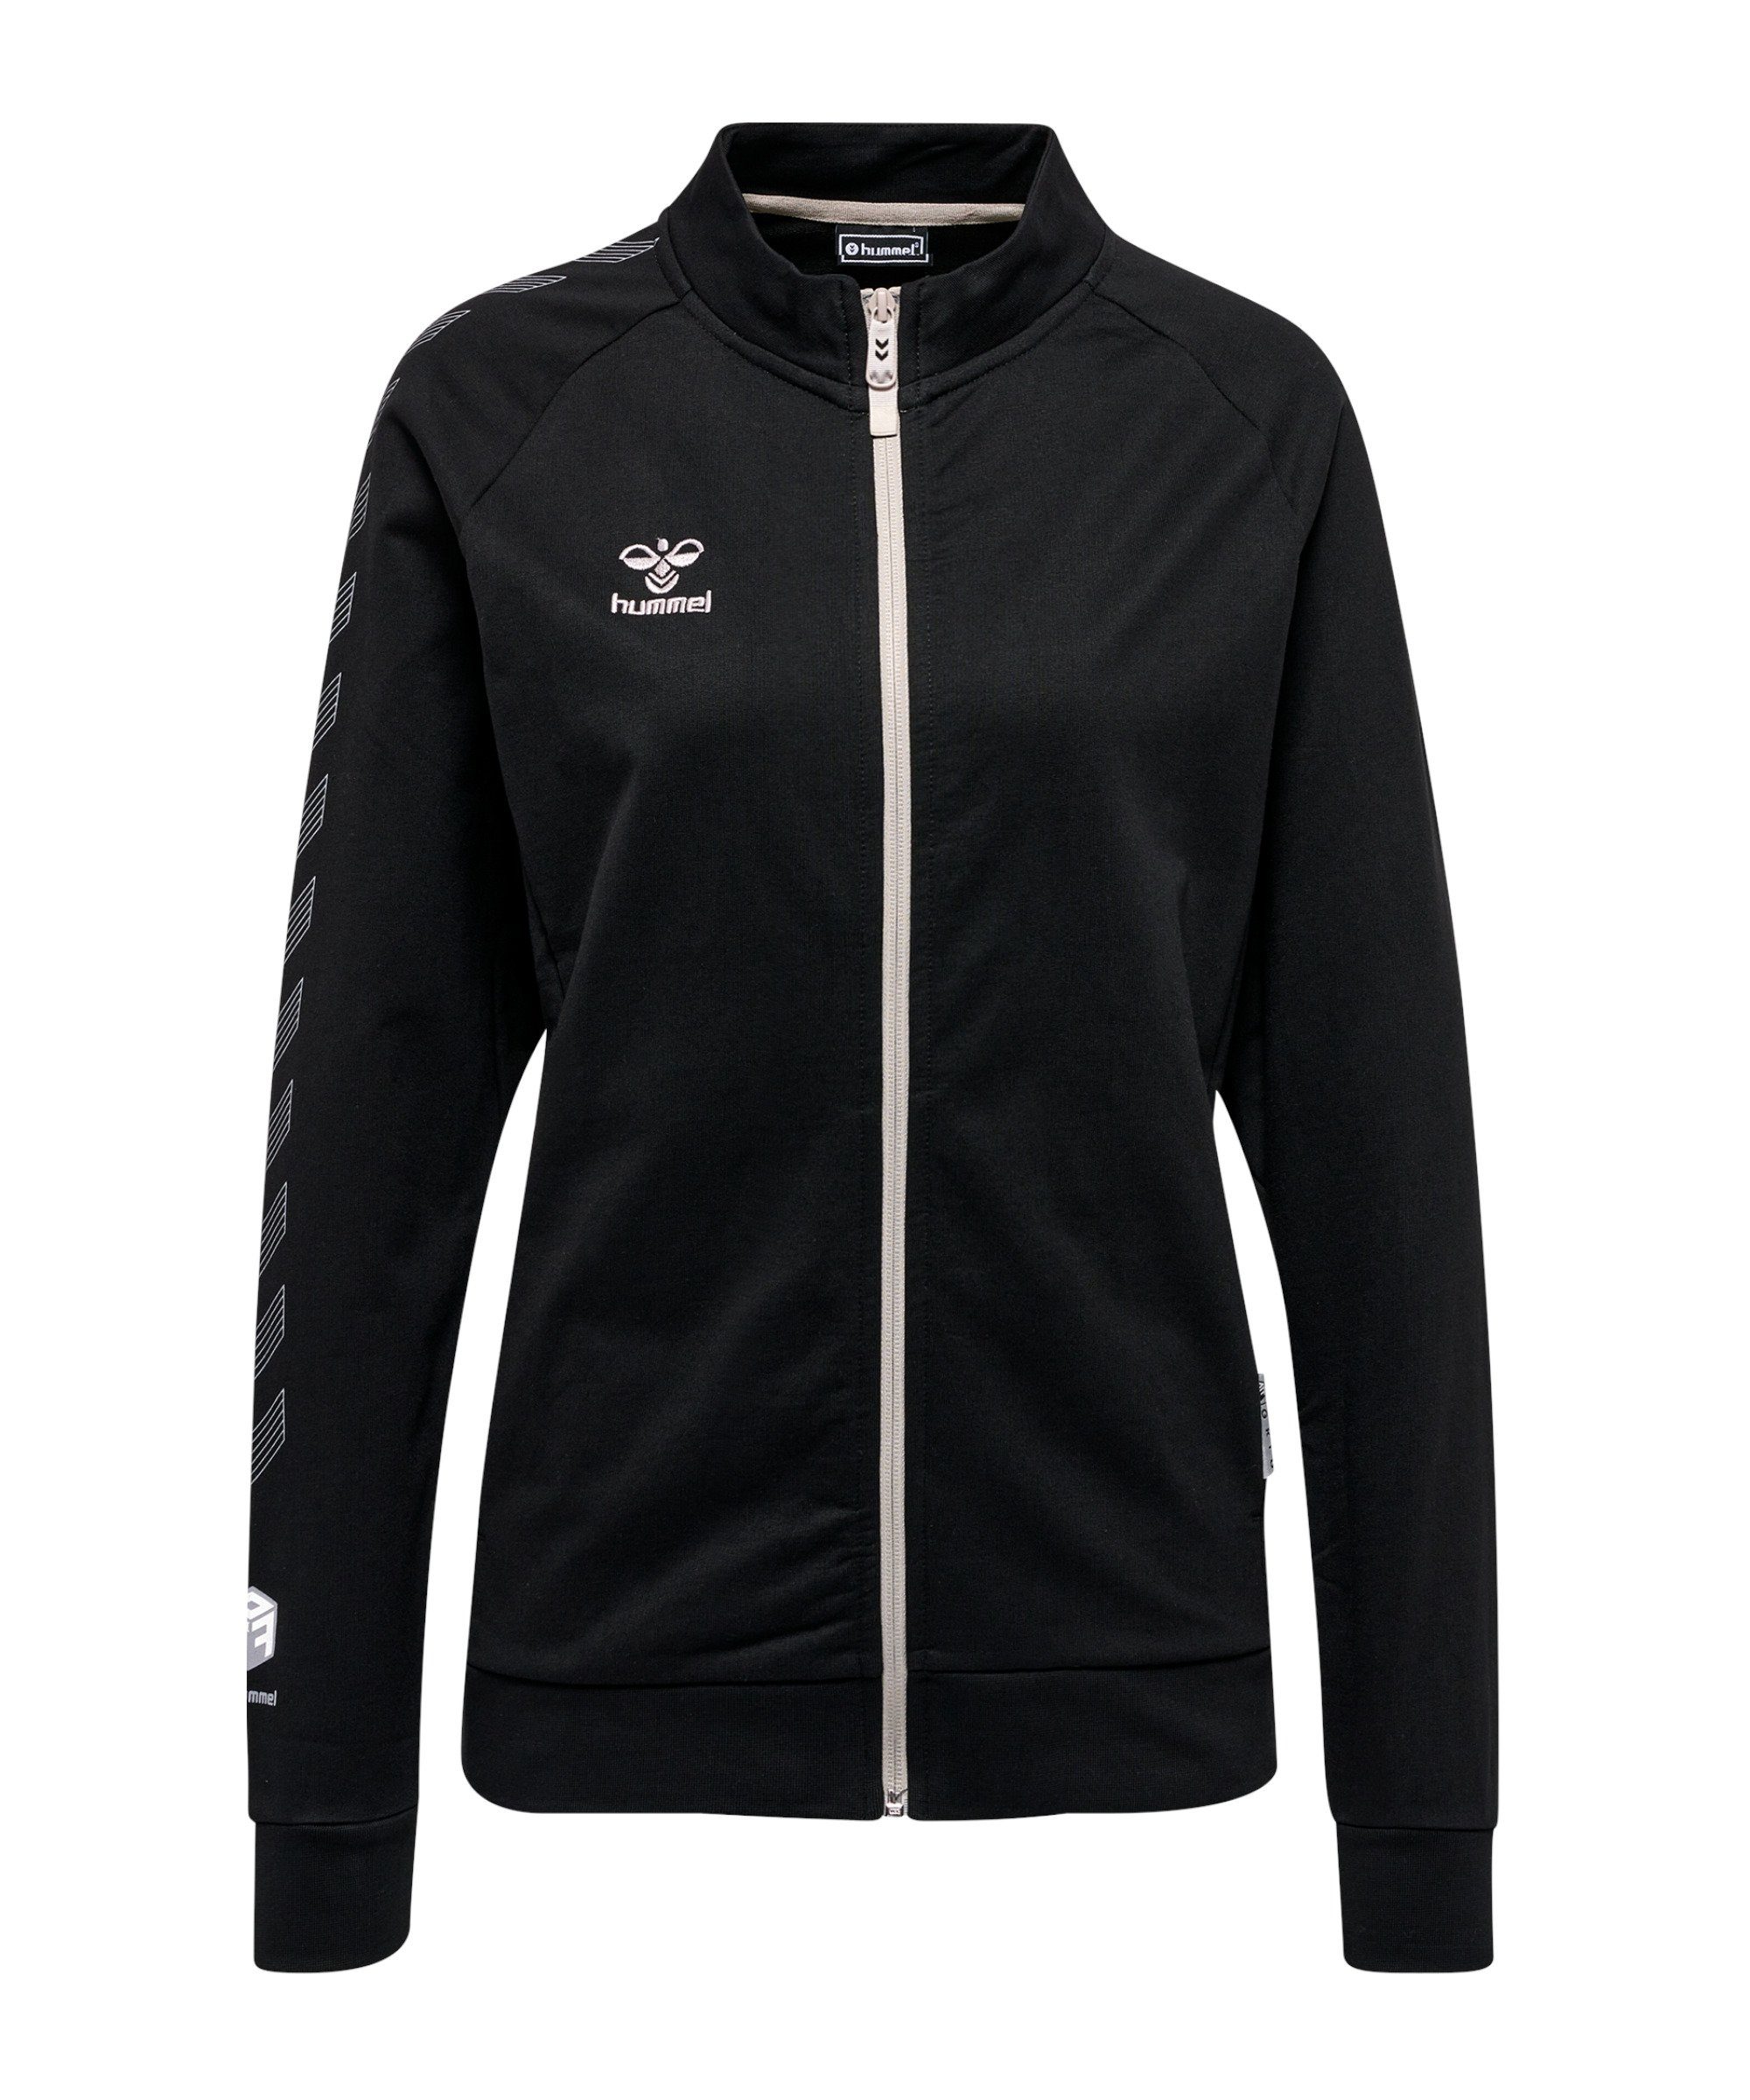 Schwarz Grid Jacke hmlMOVE Zip hummel Trainingsjacke Damen